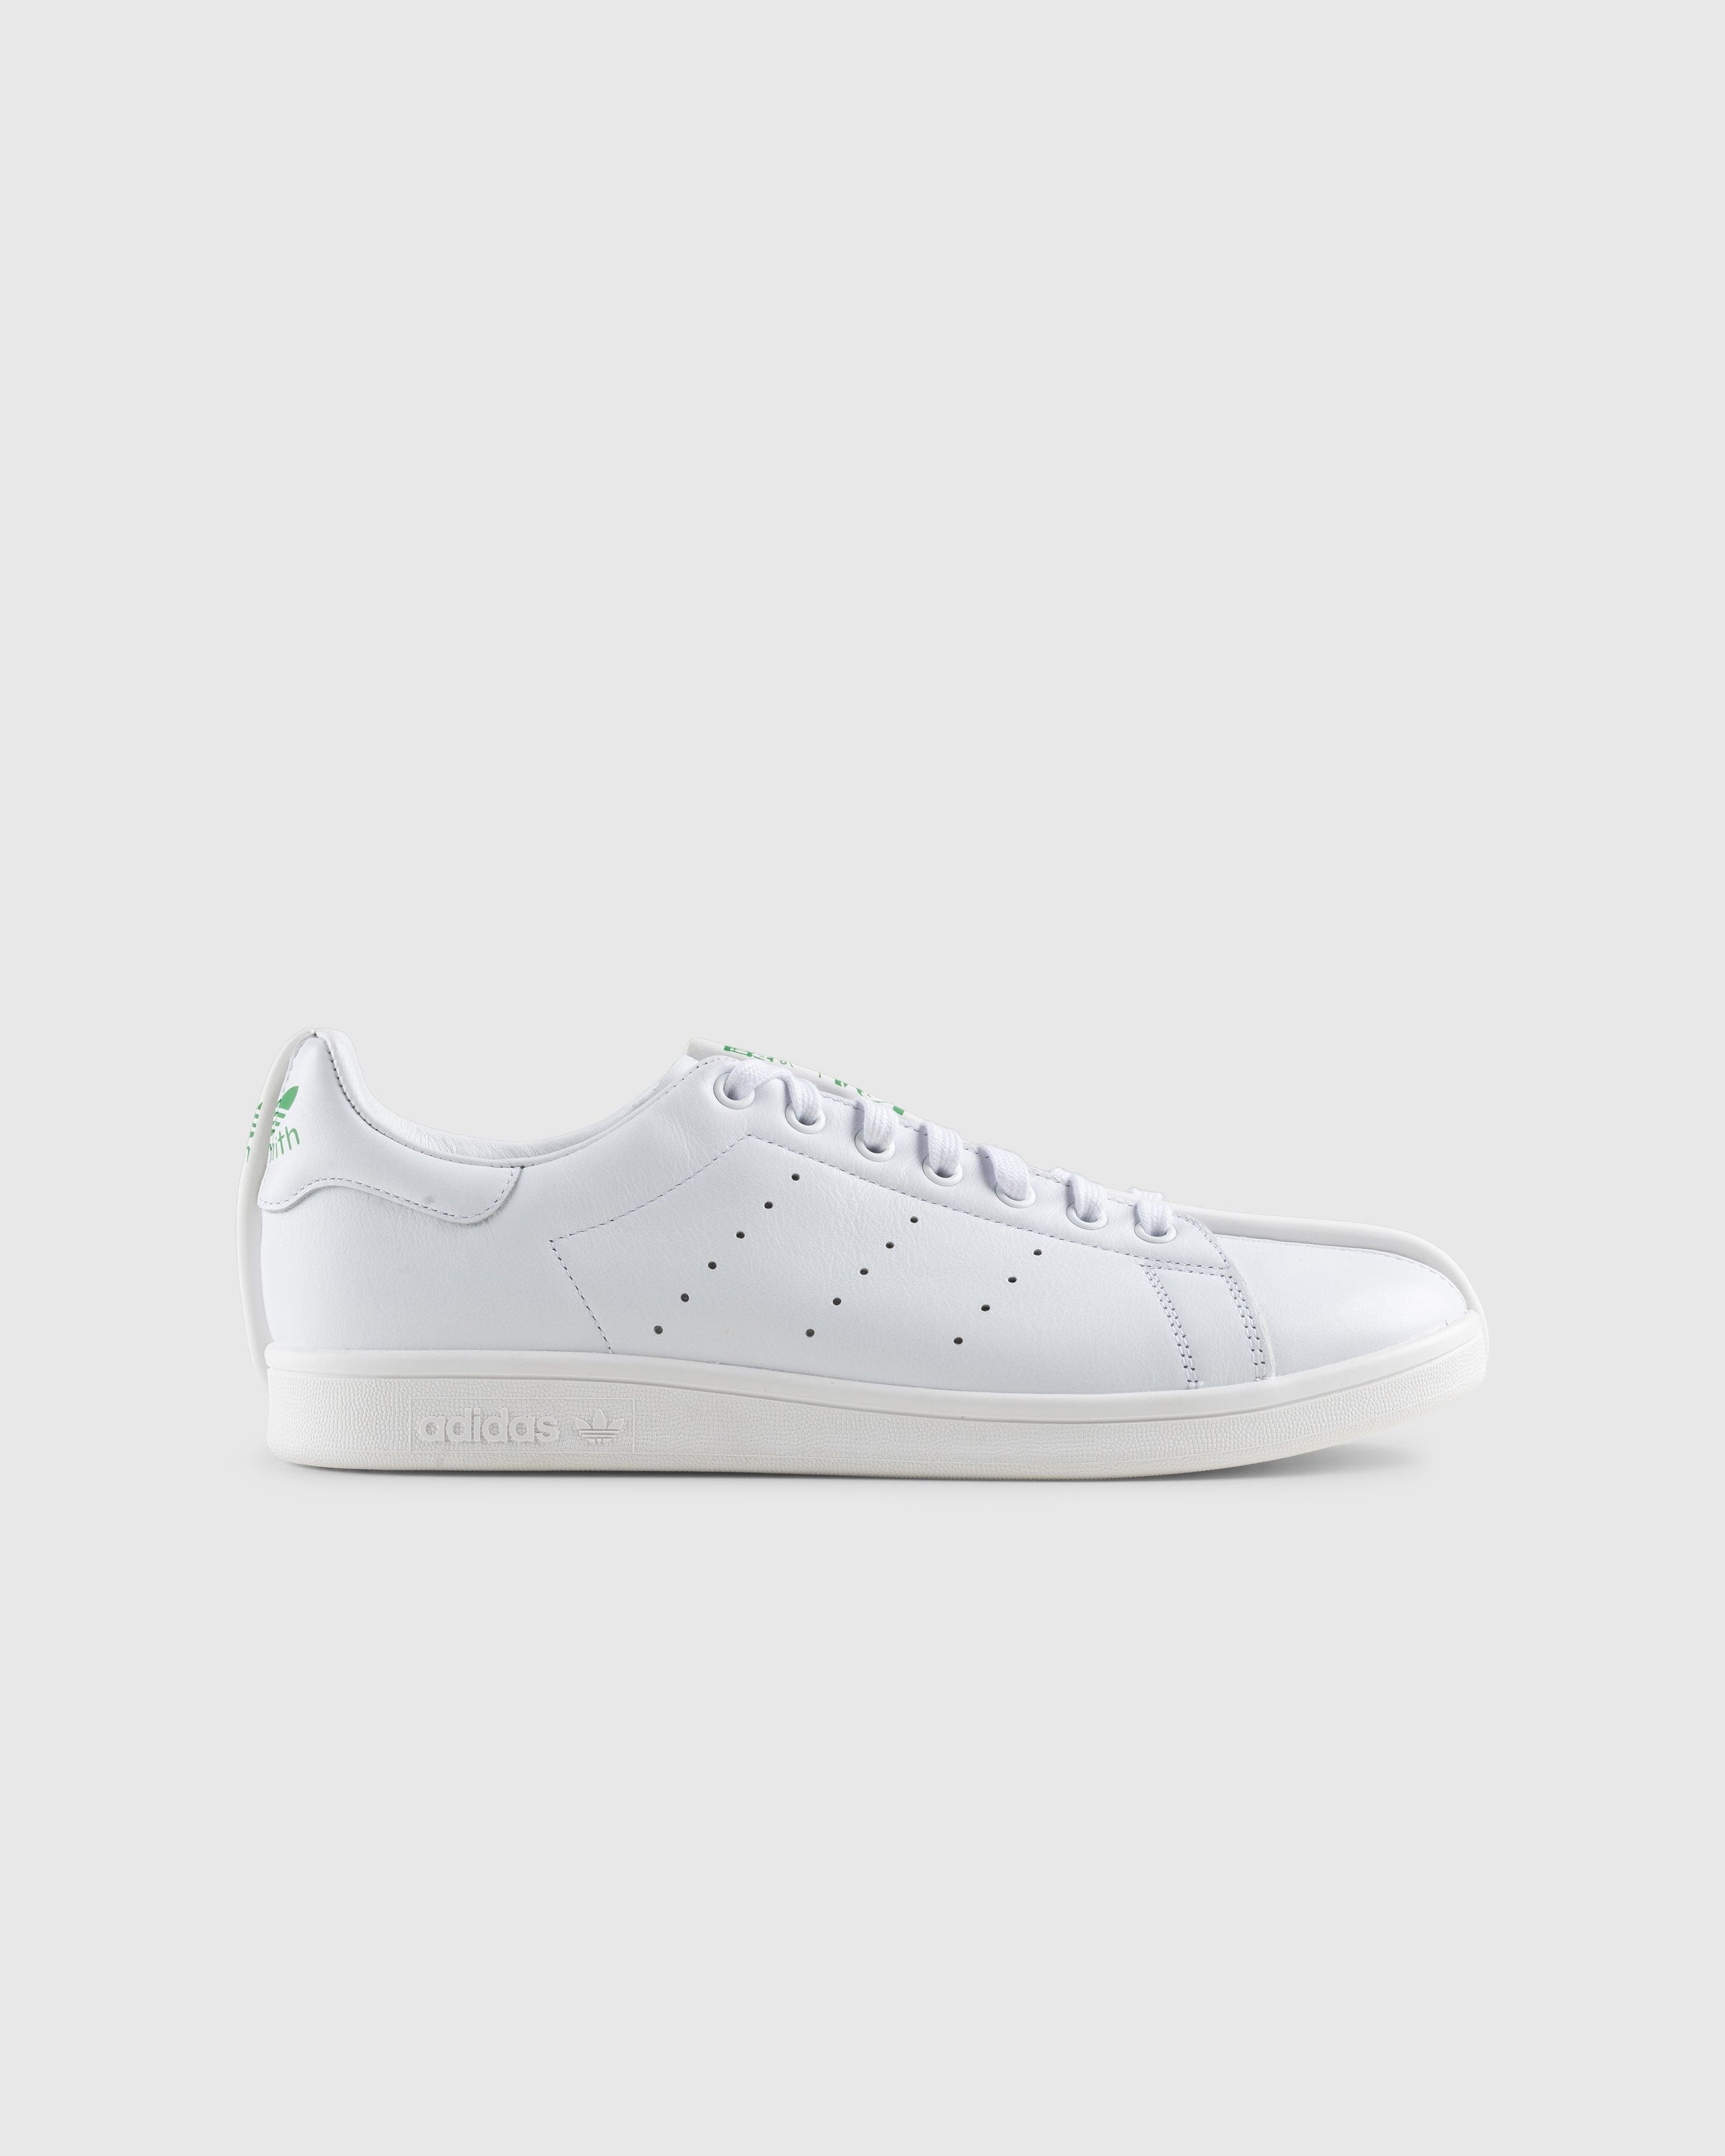 Adidas – CG Split Stan Smith White/Black - Sneakers - White - Image 1